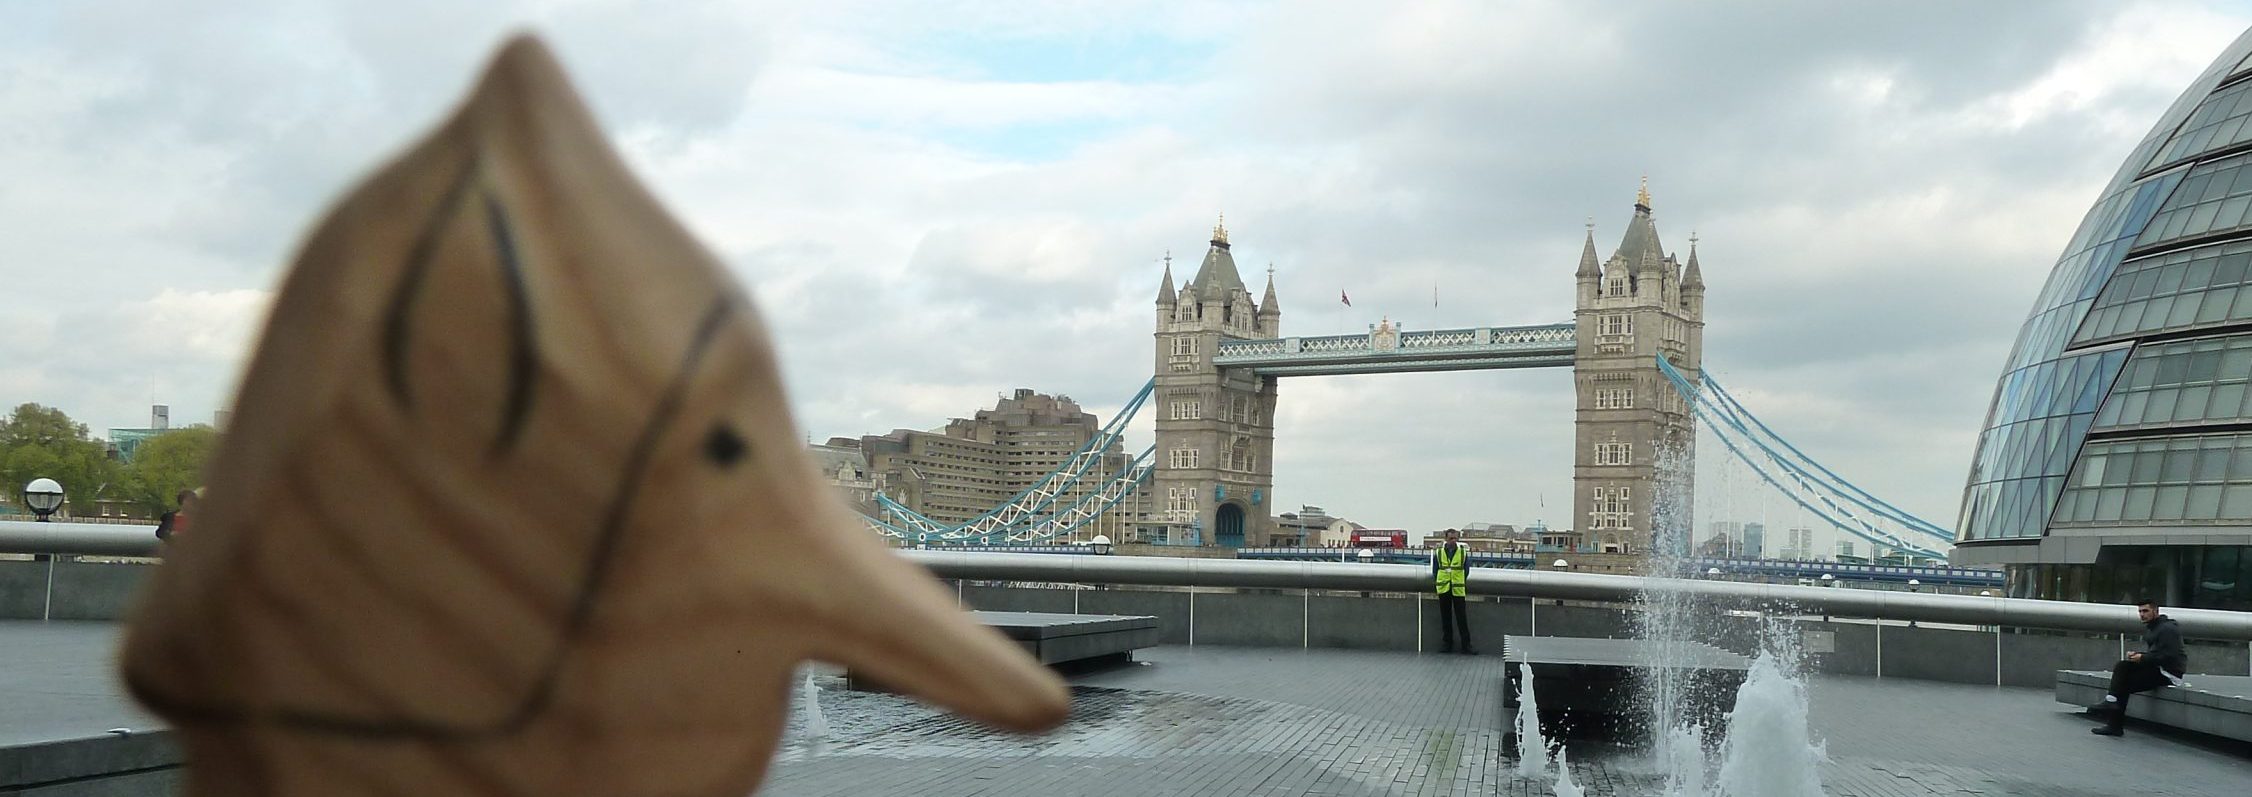 Le Hockemann du SensoRied est en vacances à London